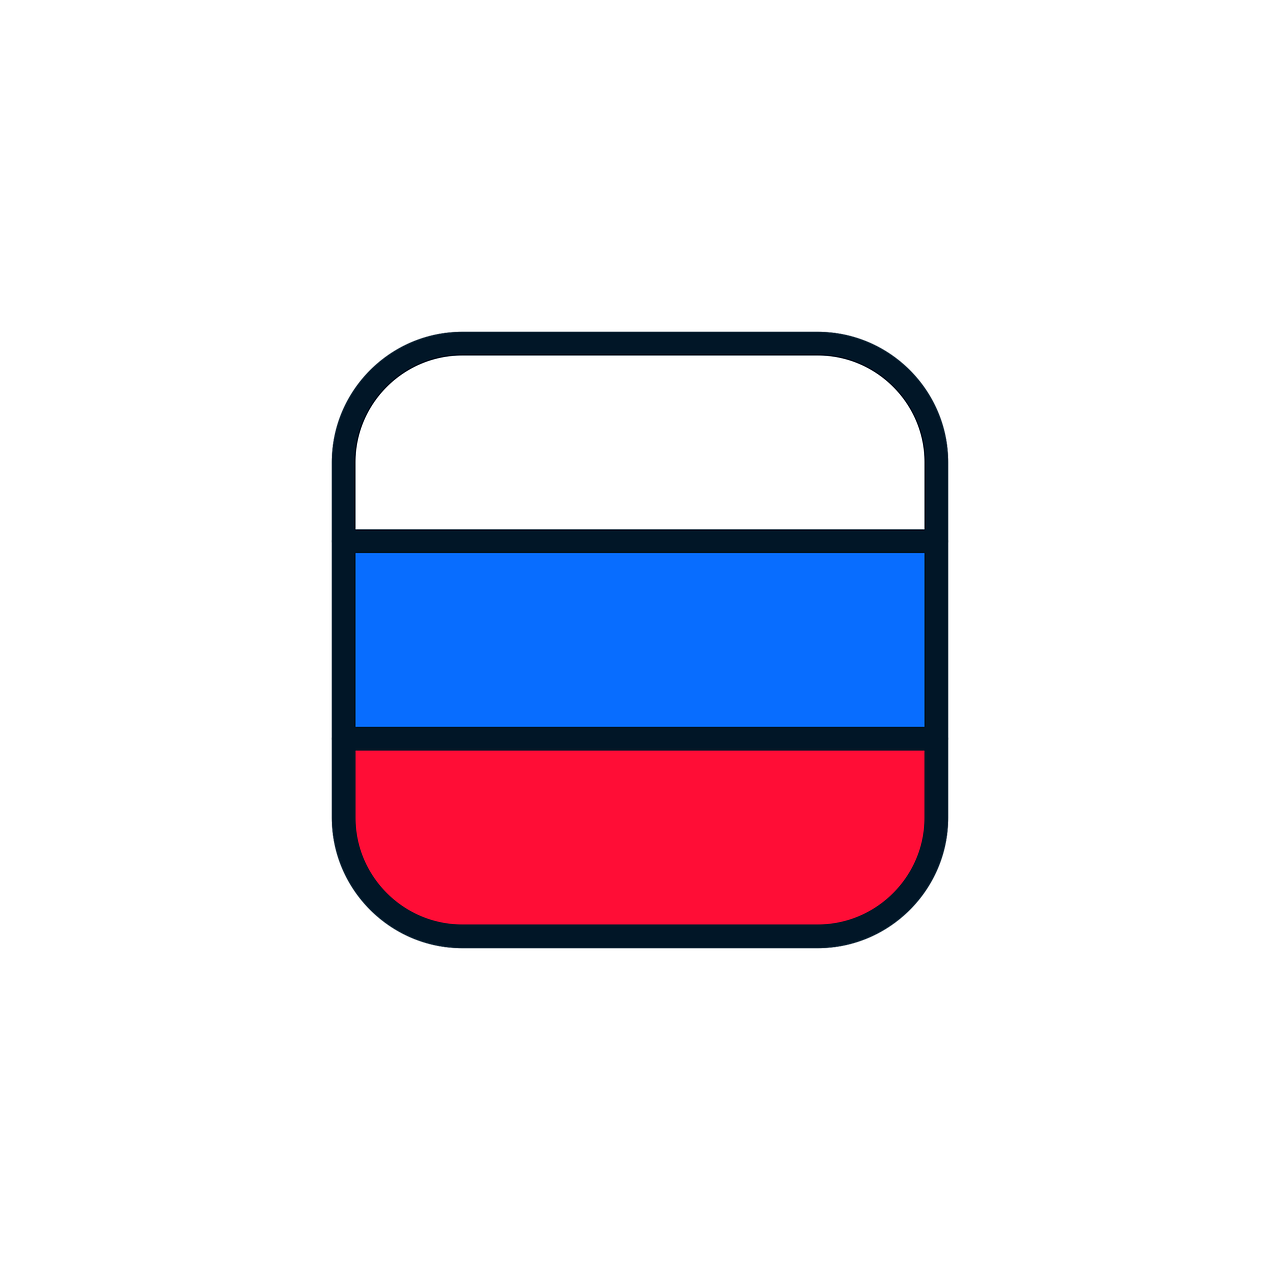 russia  russia icon  russia flag free photo